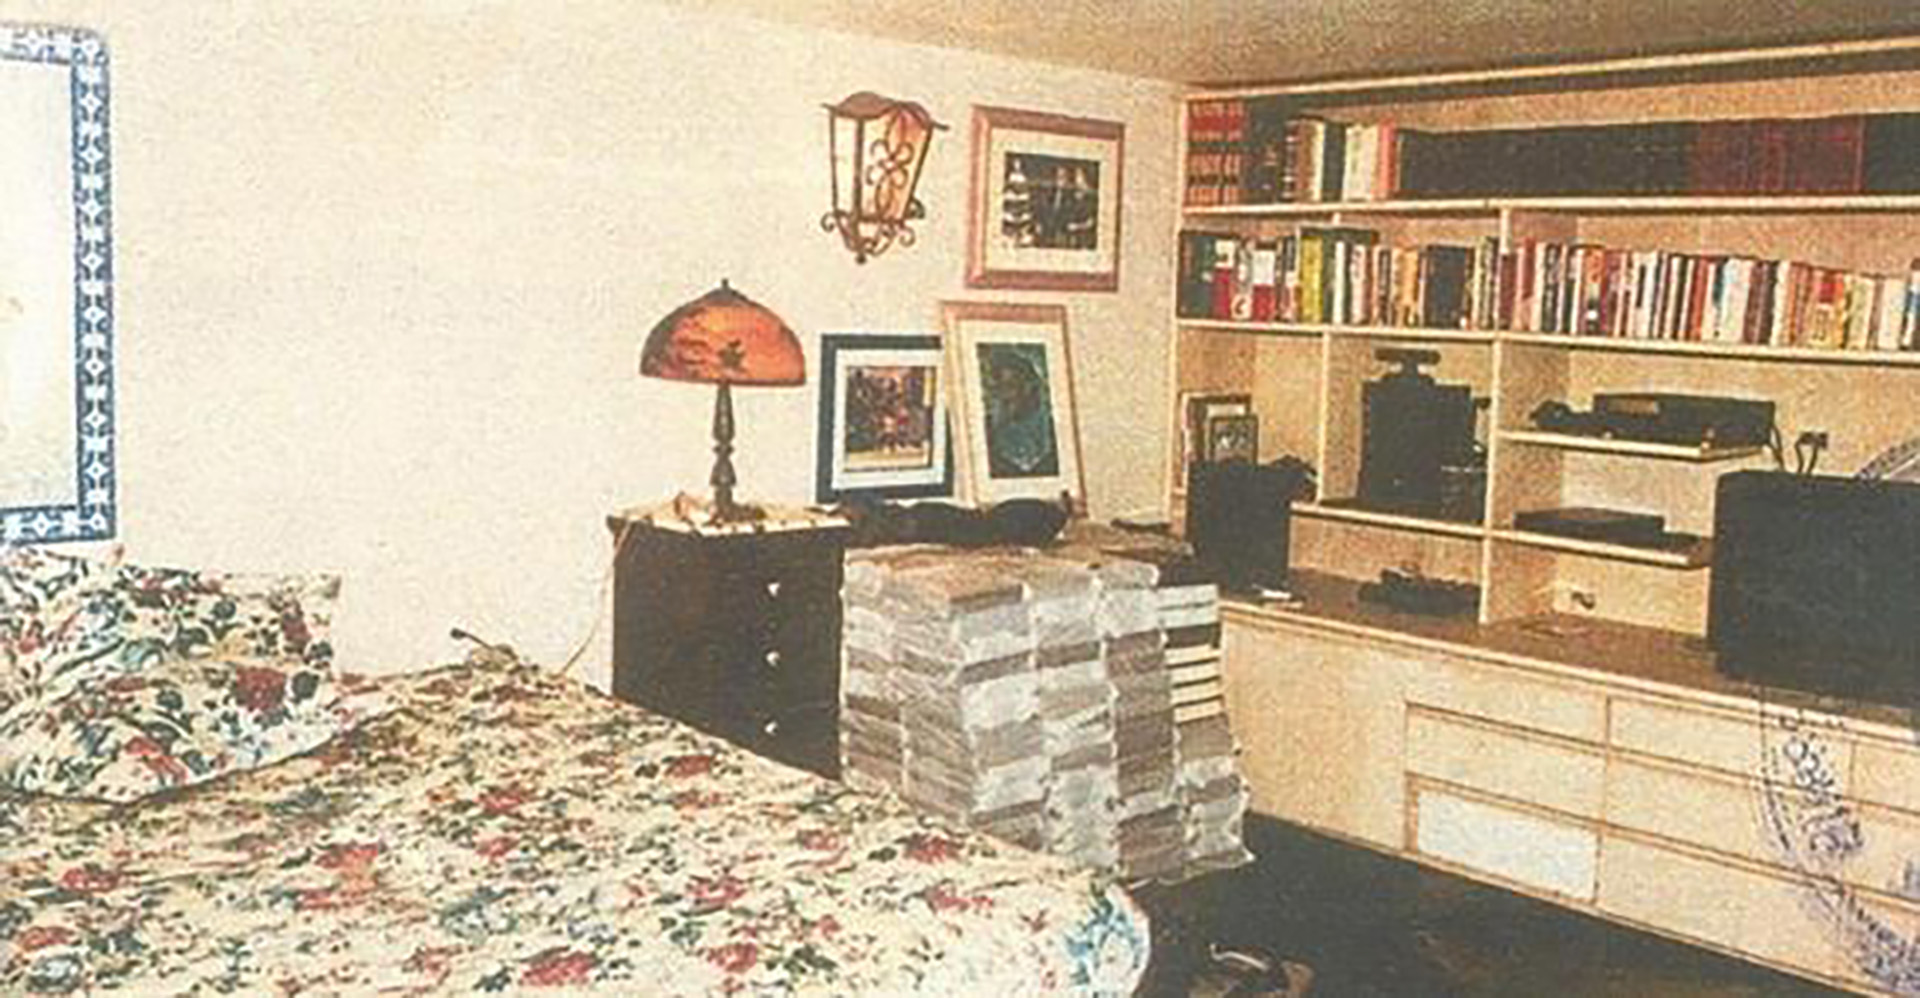 Habitación de Escobar en el centro penitenciario.